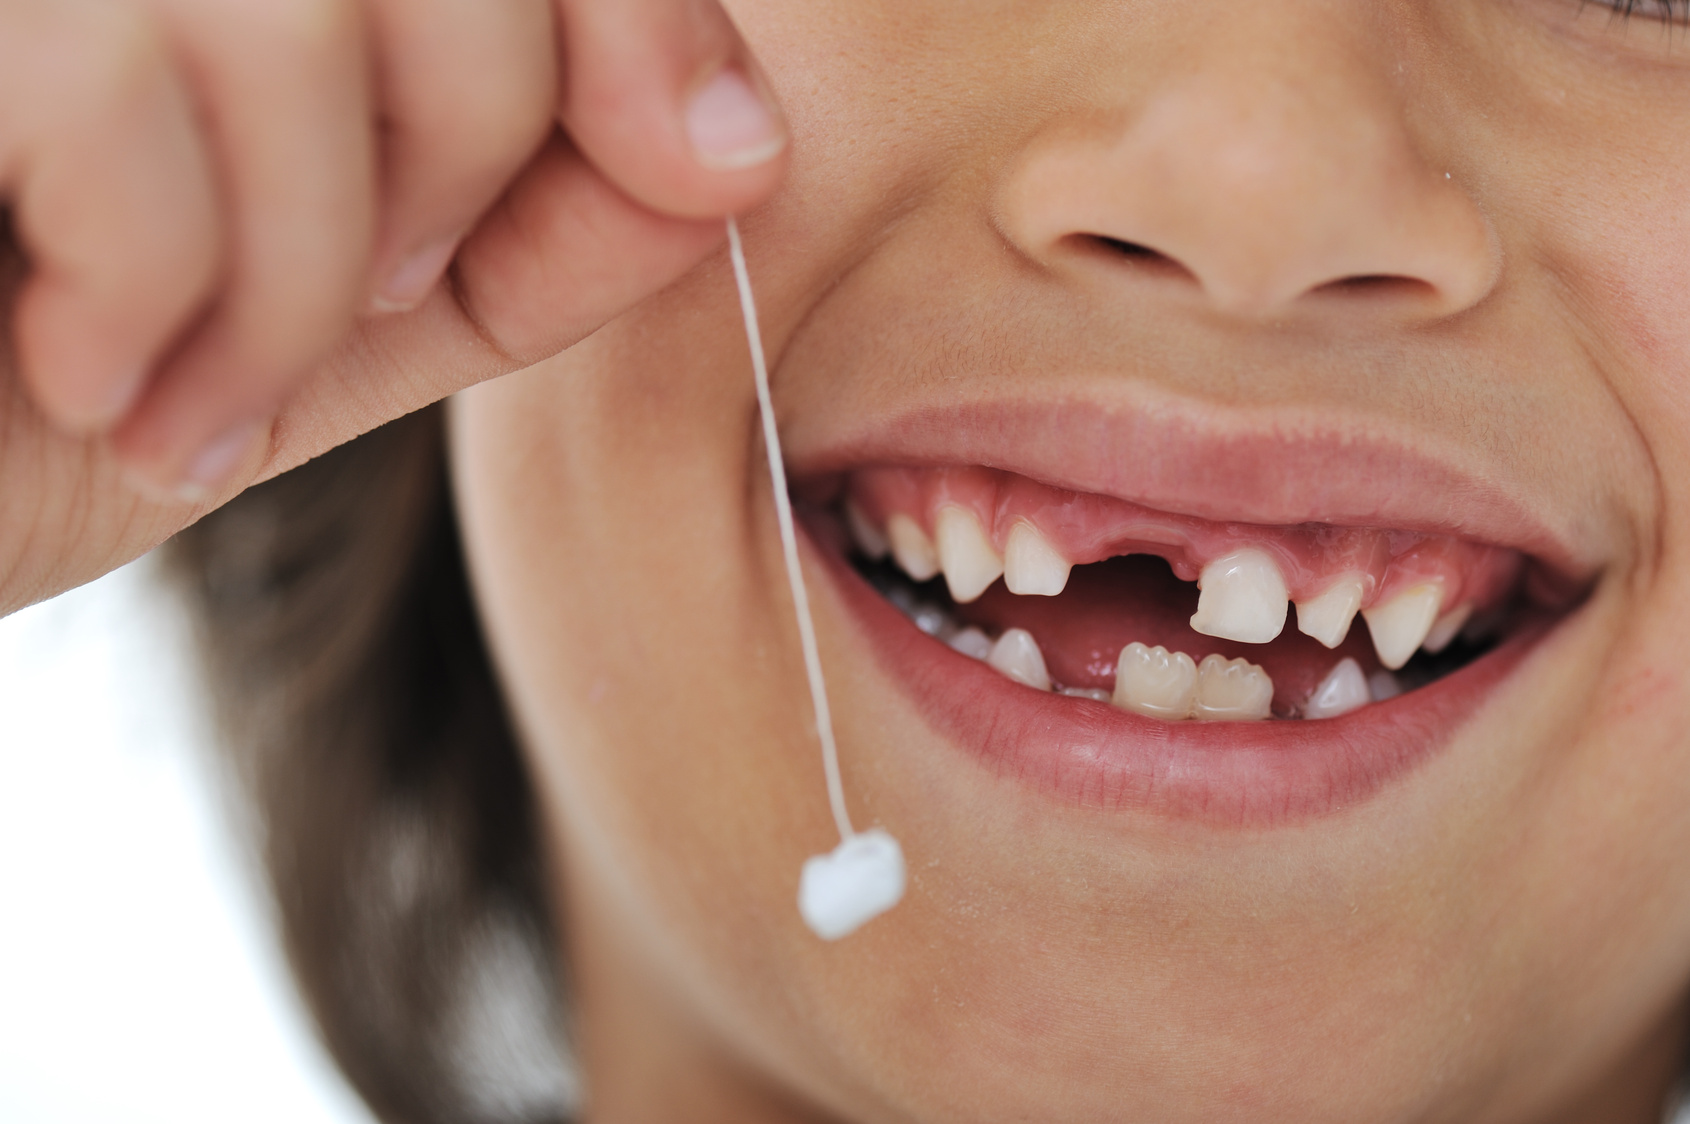 Молочные зубы у детей: схема прорезывания и выпадения, уход за полостью рта